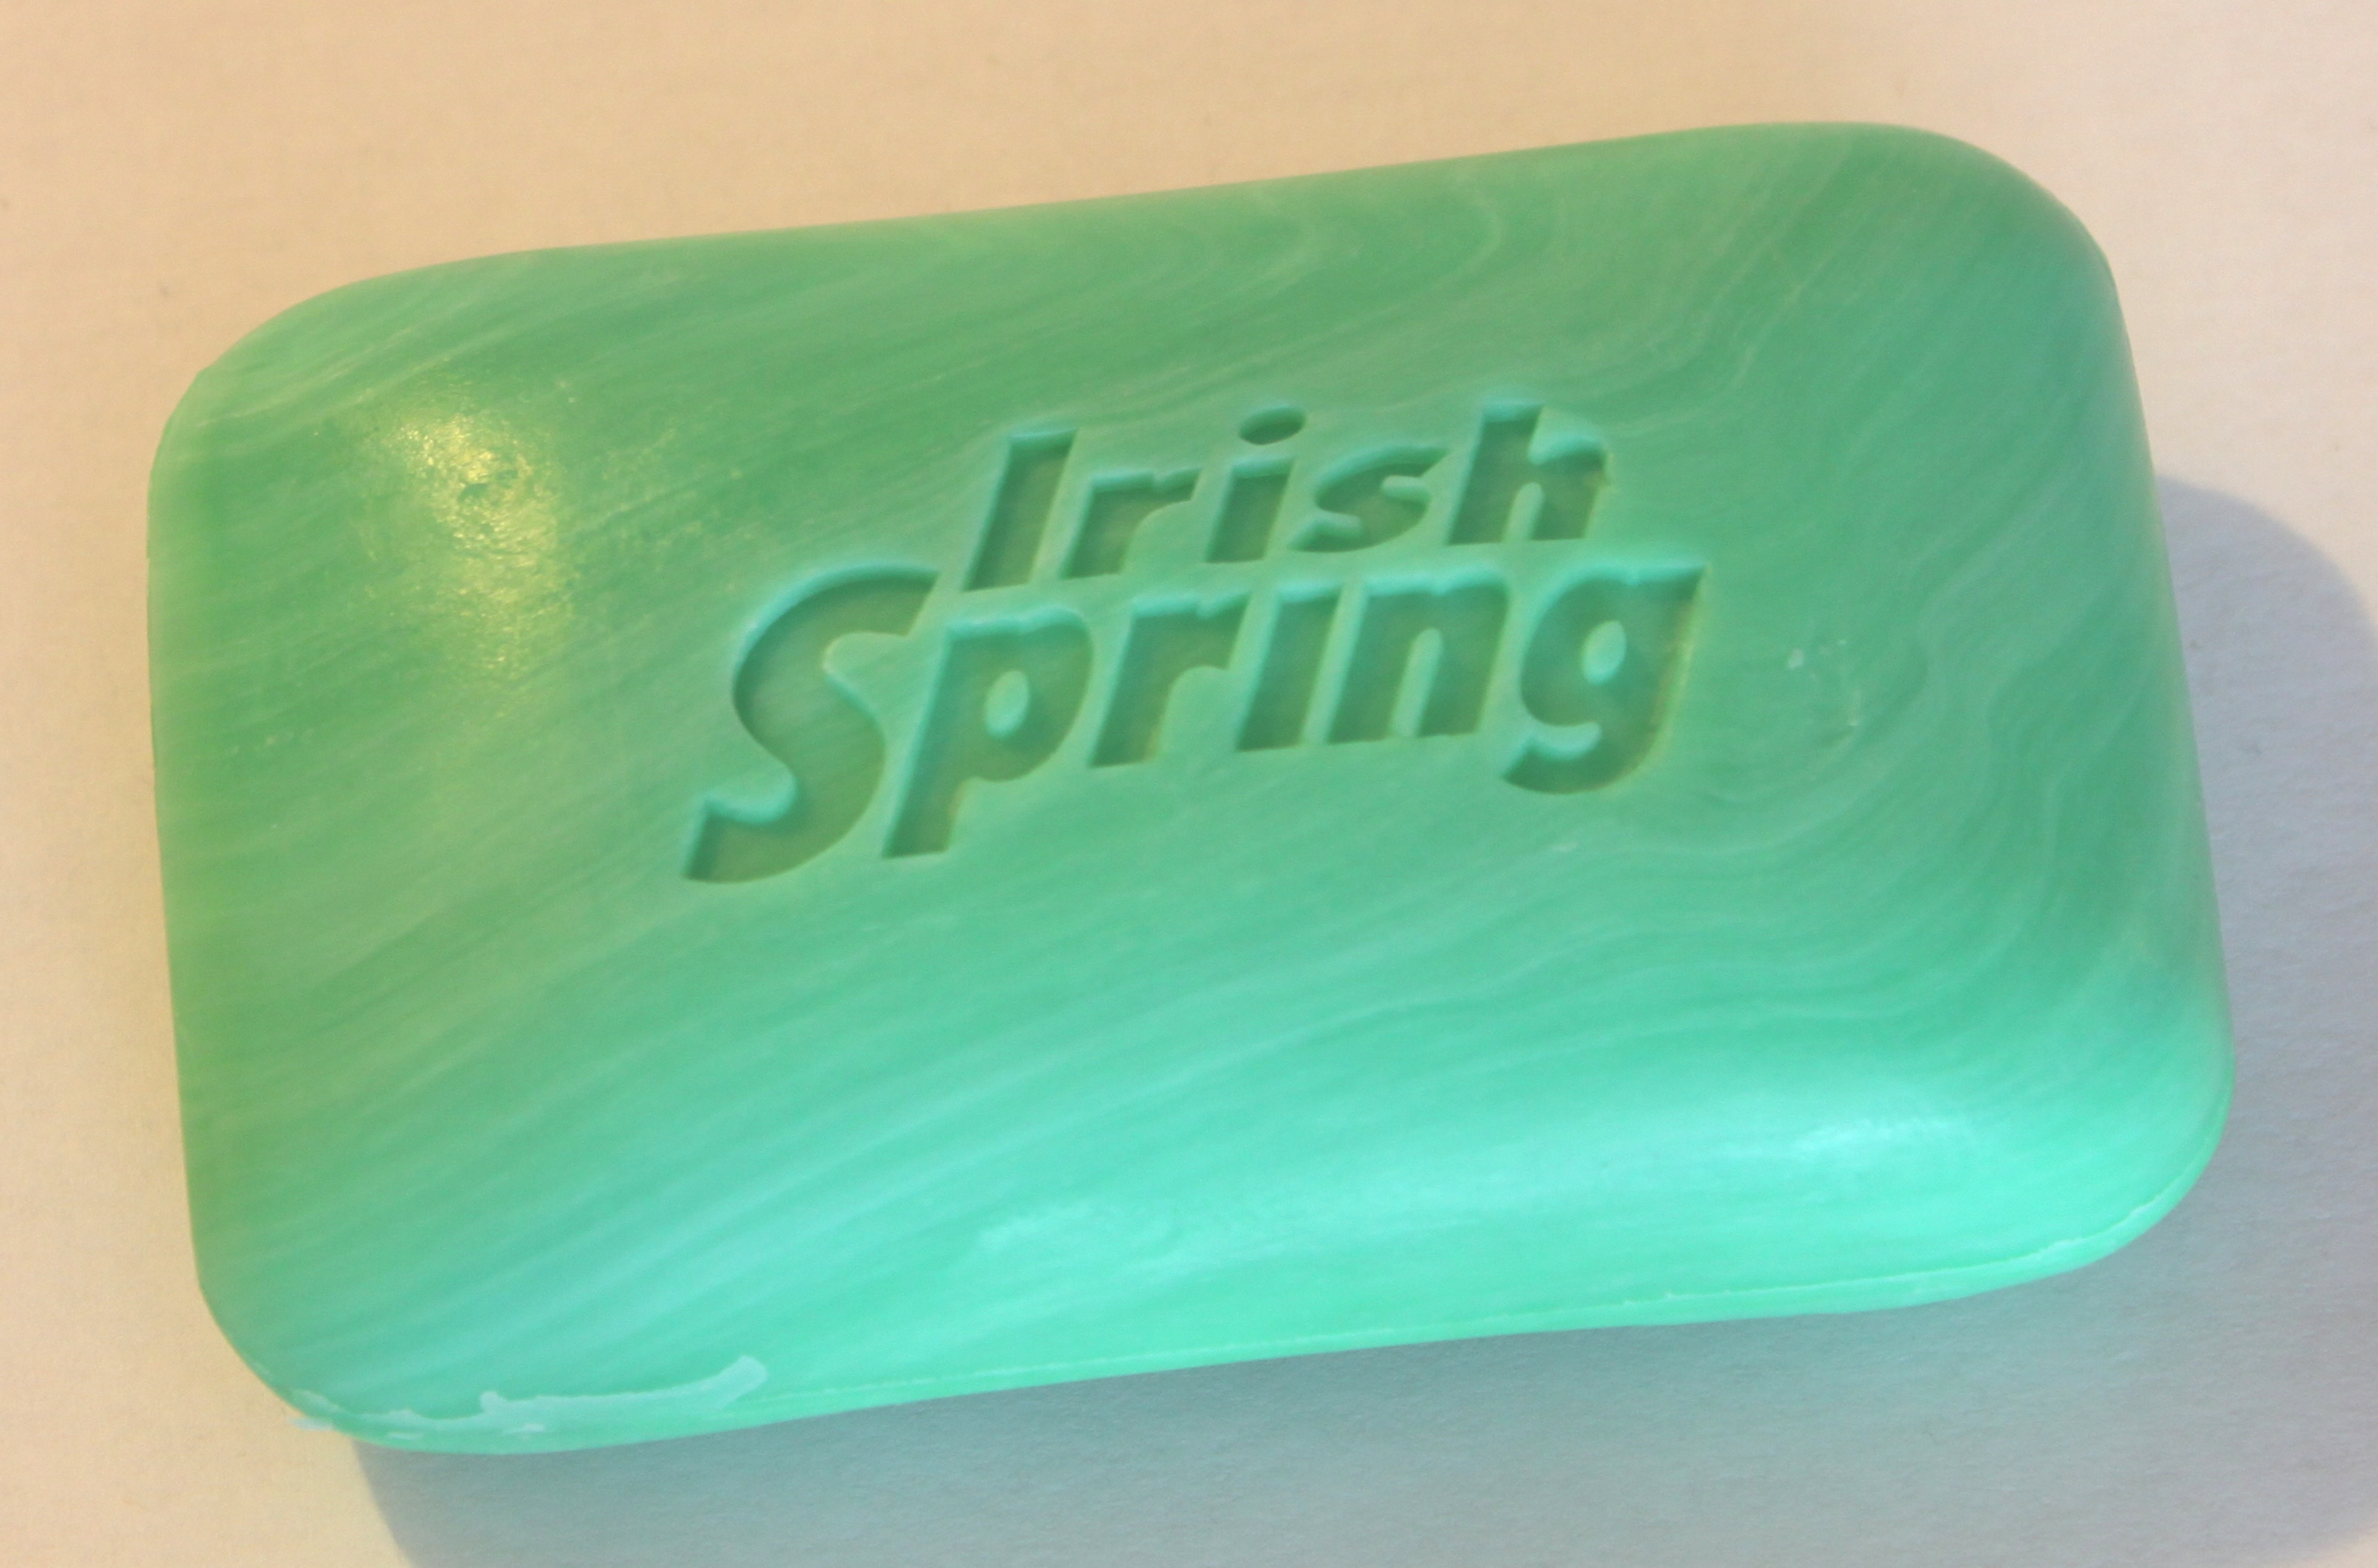 Bar_of_Irish_Spring_deodorant_soap.JPG